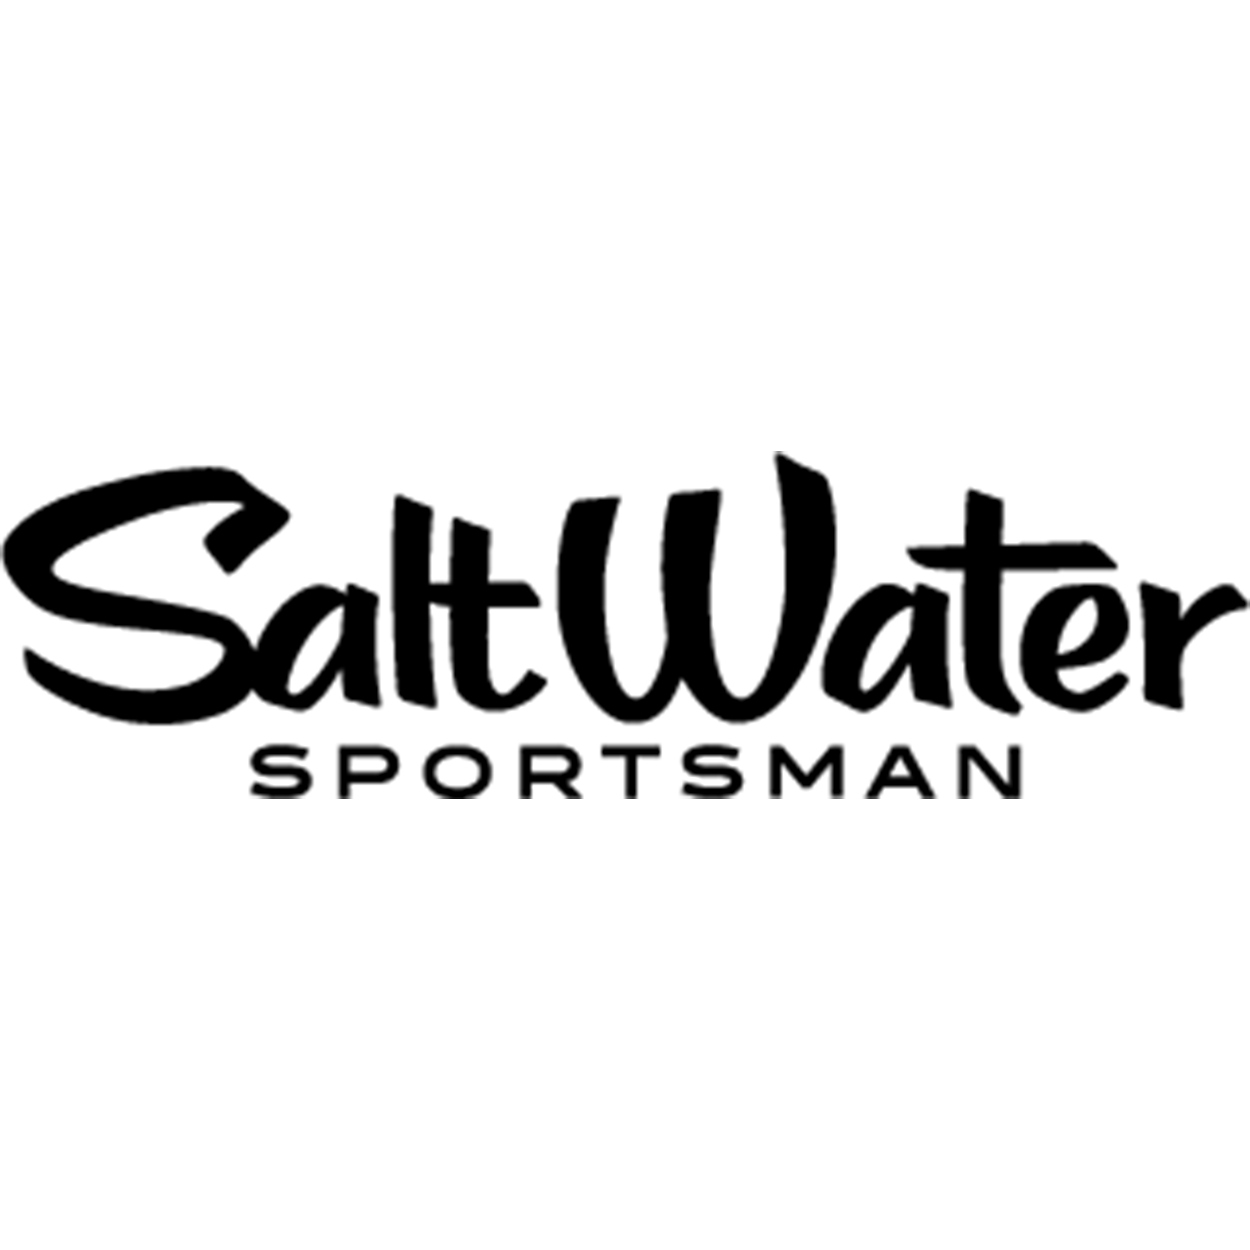 Saltwater Sportsman magazine logo